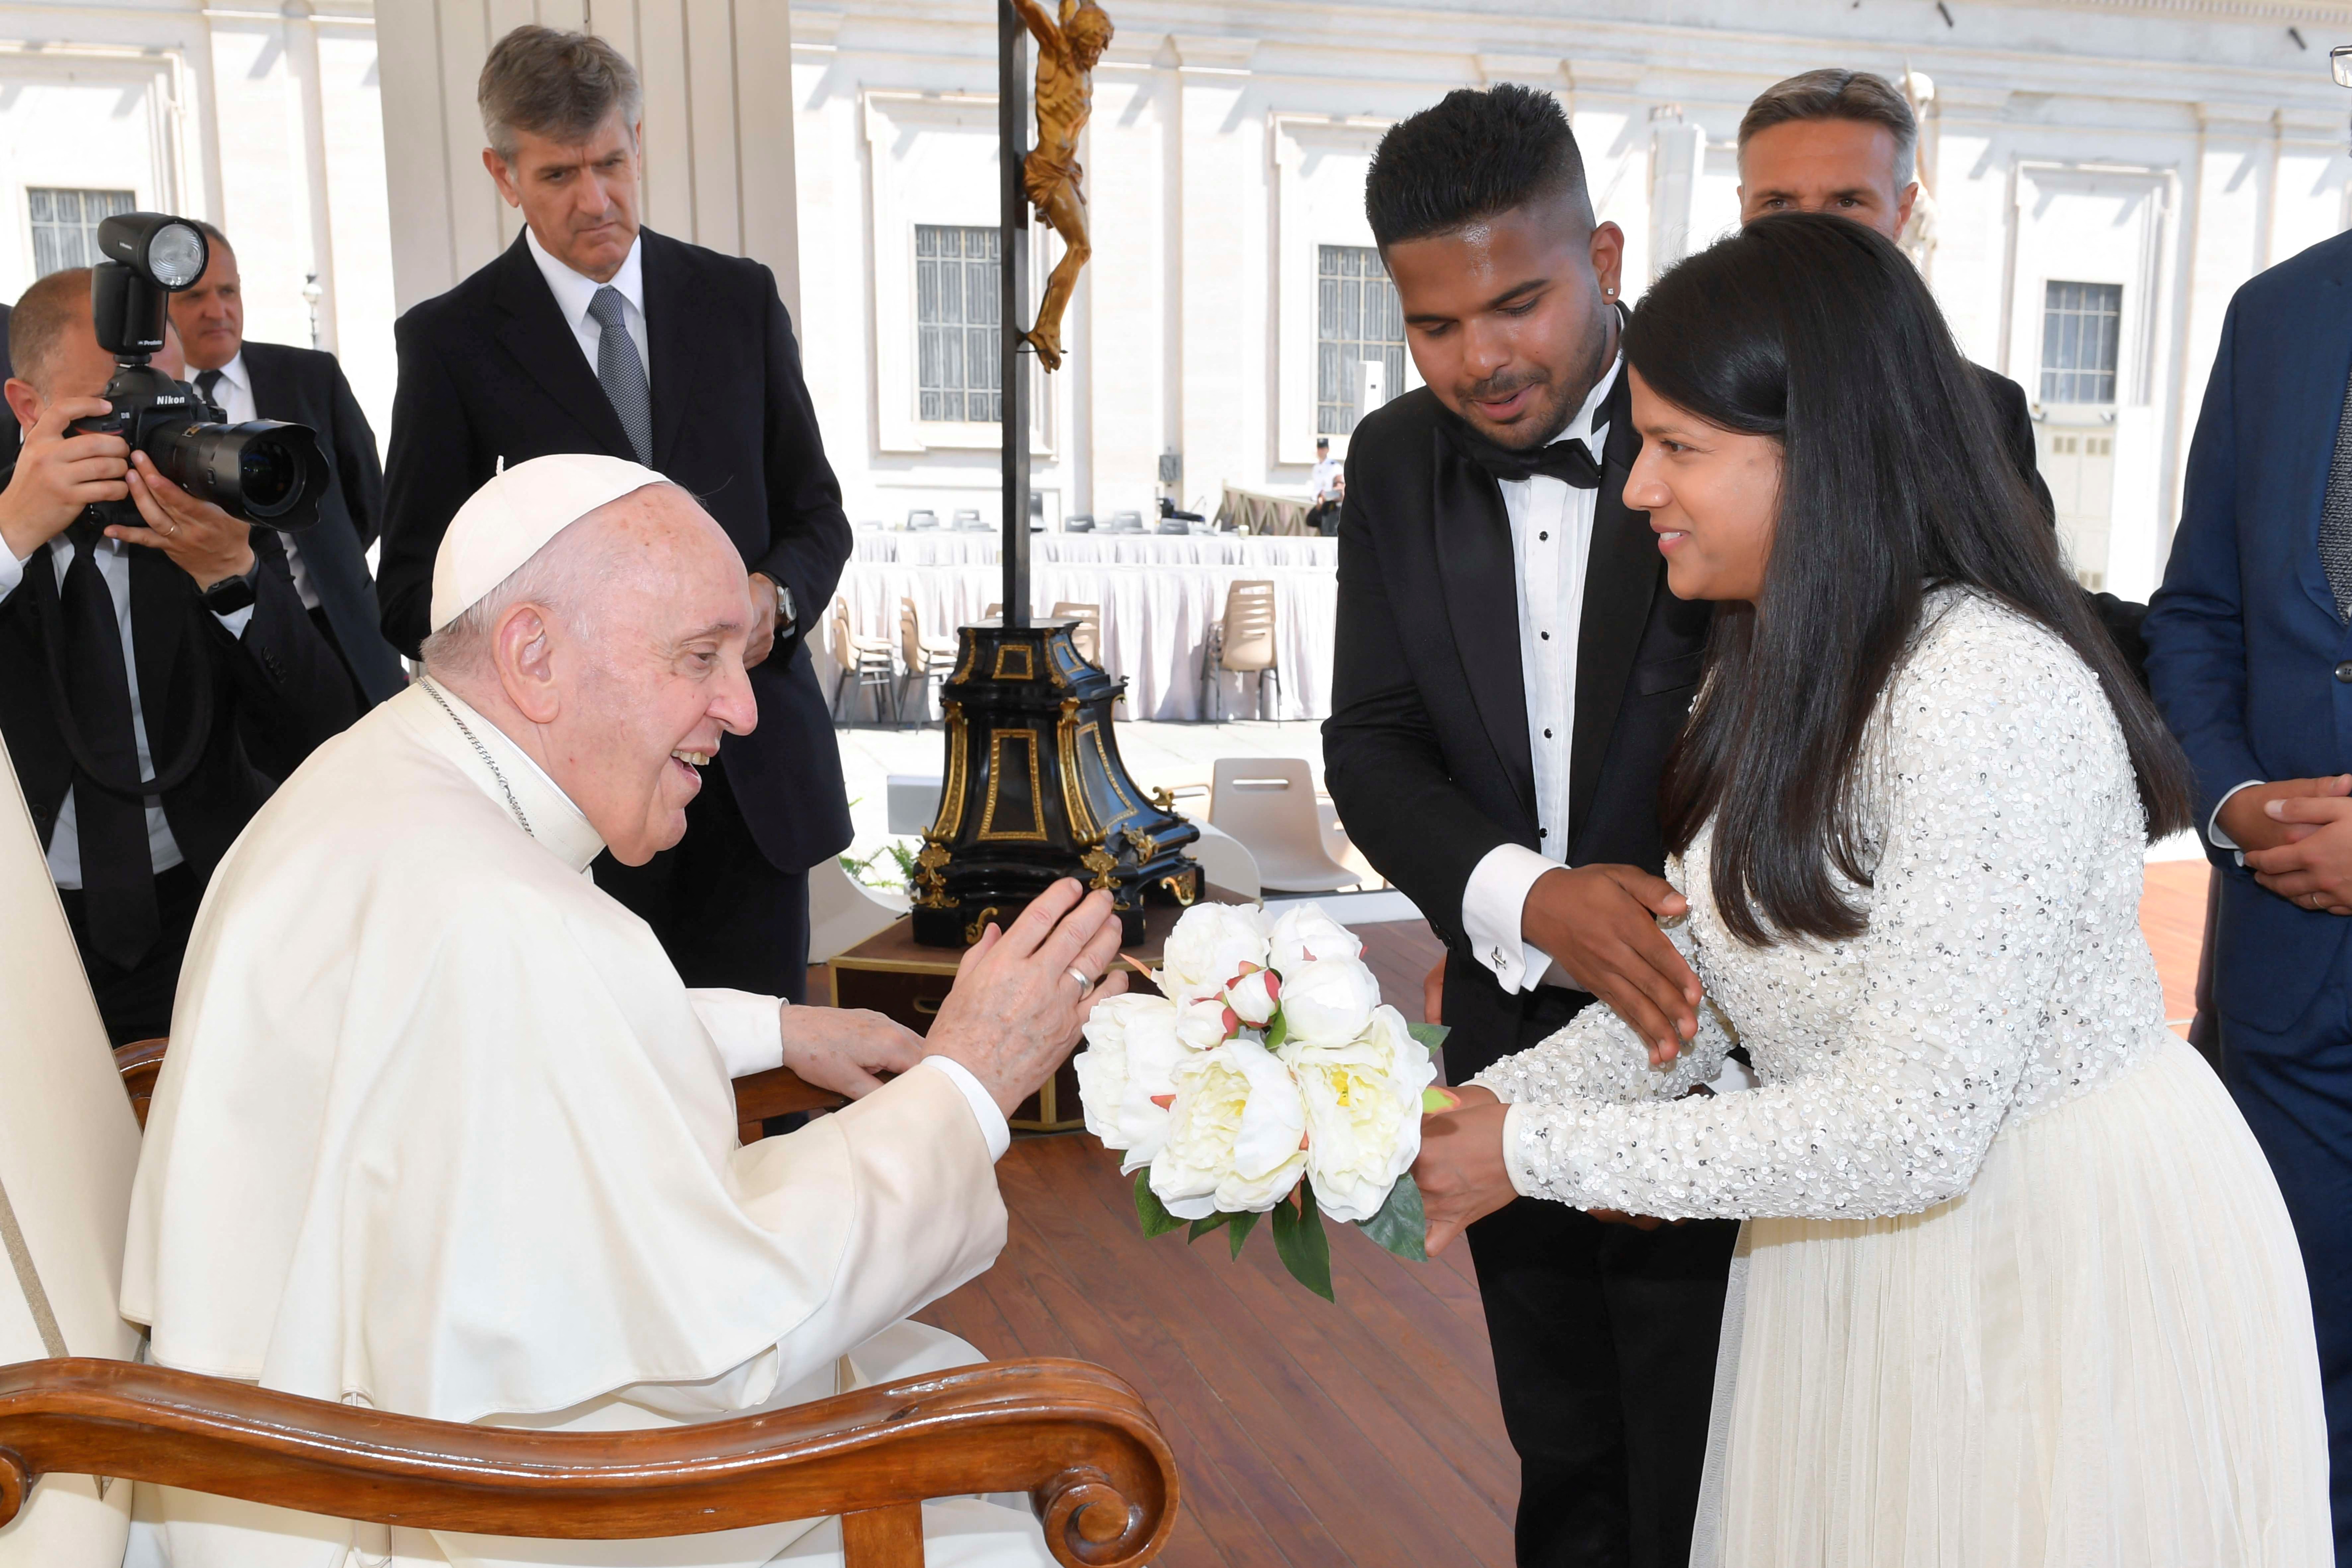 El papa Francisco pidió a las parejas que no tengan sexo antes del  casamiento: “La castidad enseña el amor verdadero” - Infobae